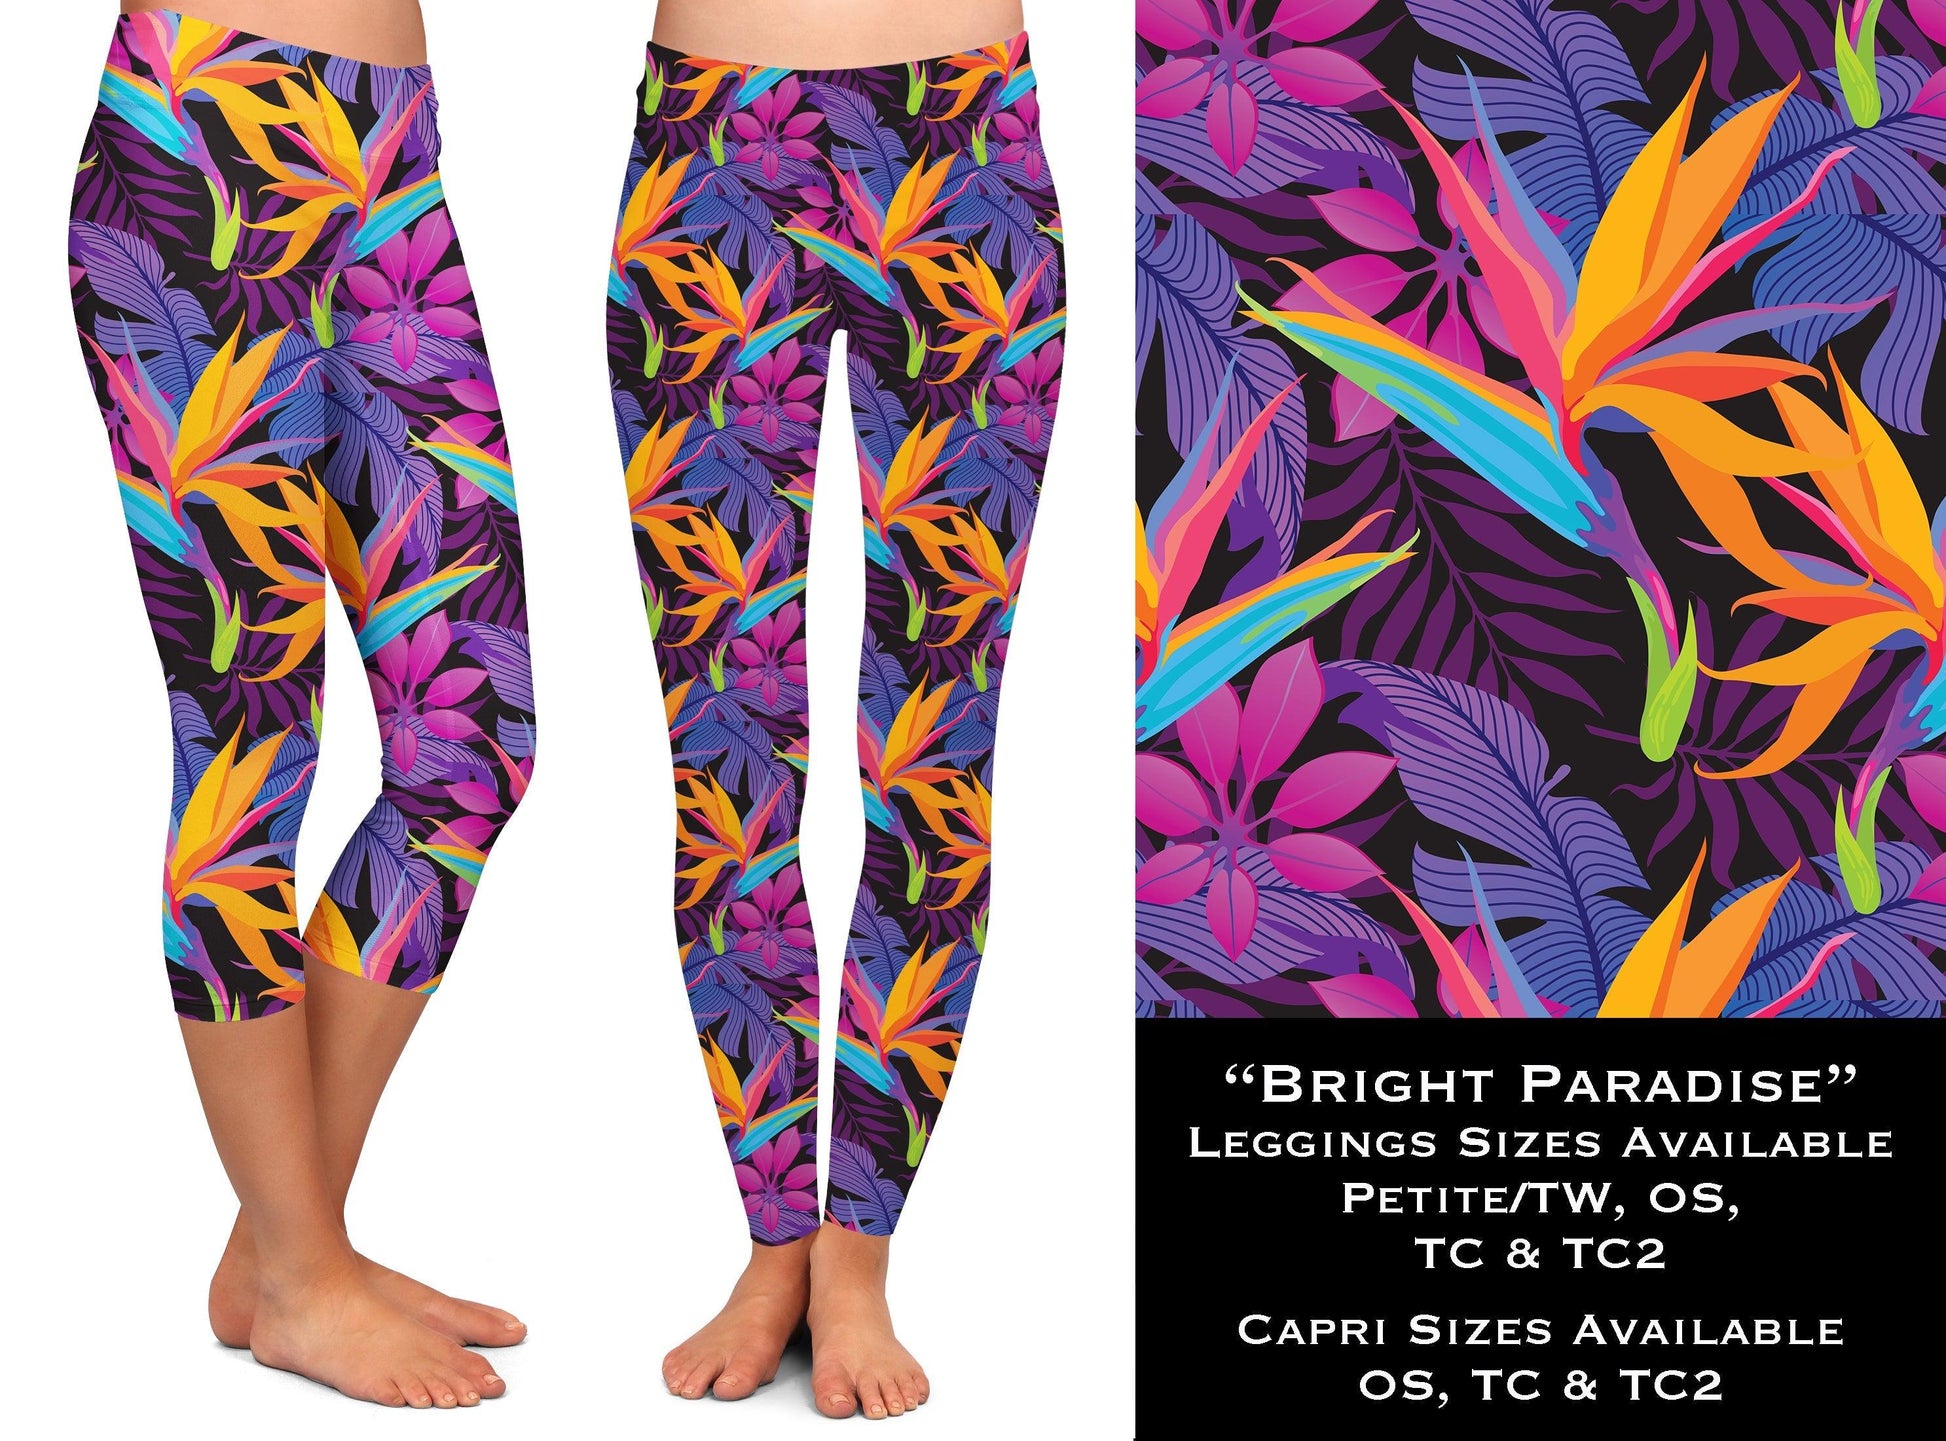 Bright Paradise - Leggings & Capris - That’s So Fletch Boutique 